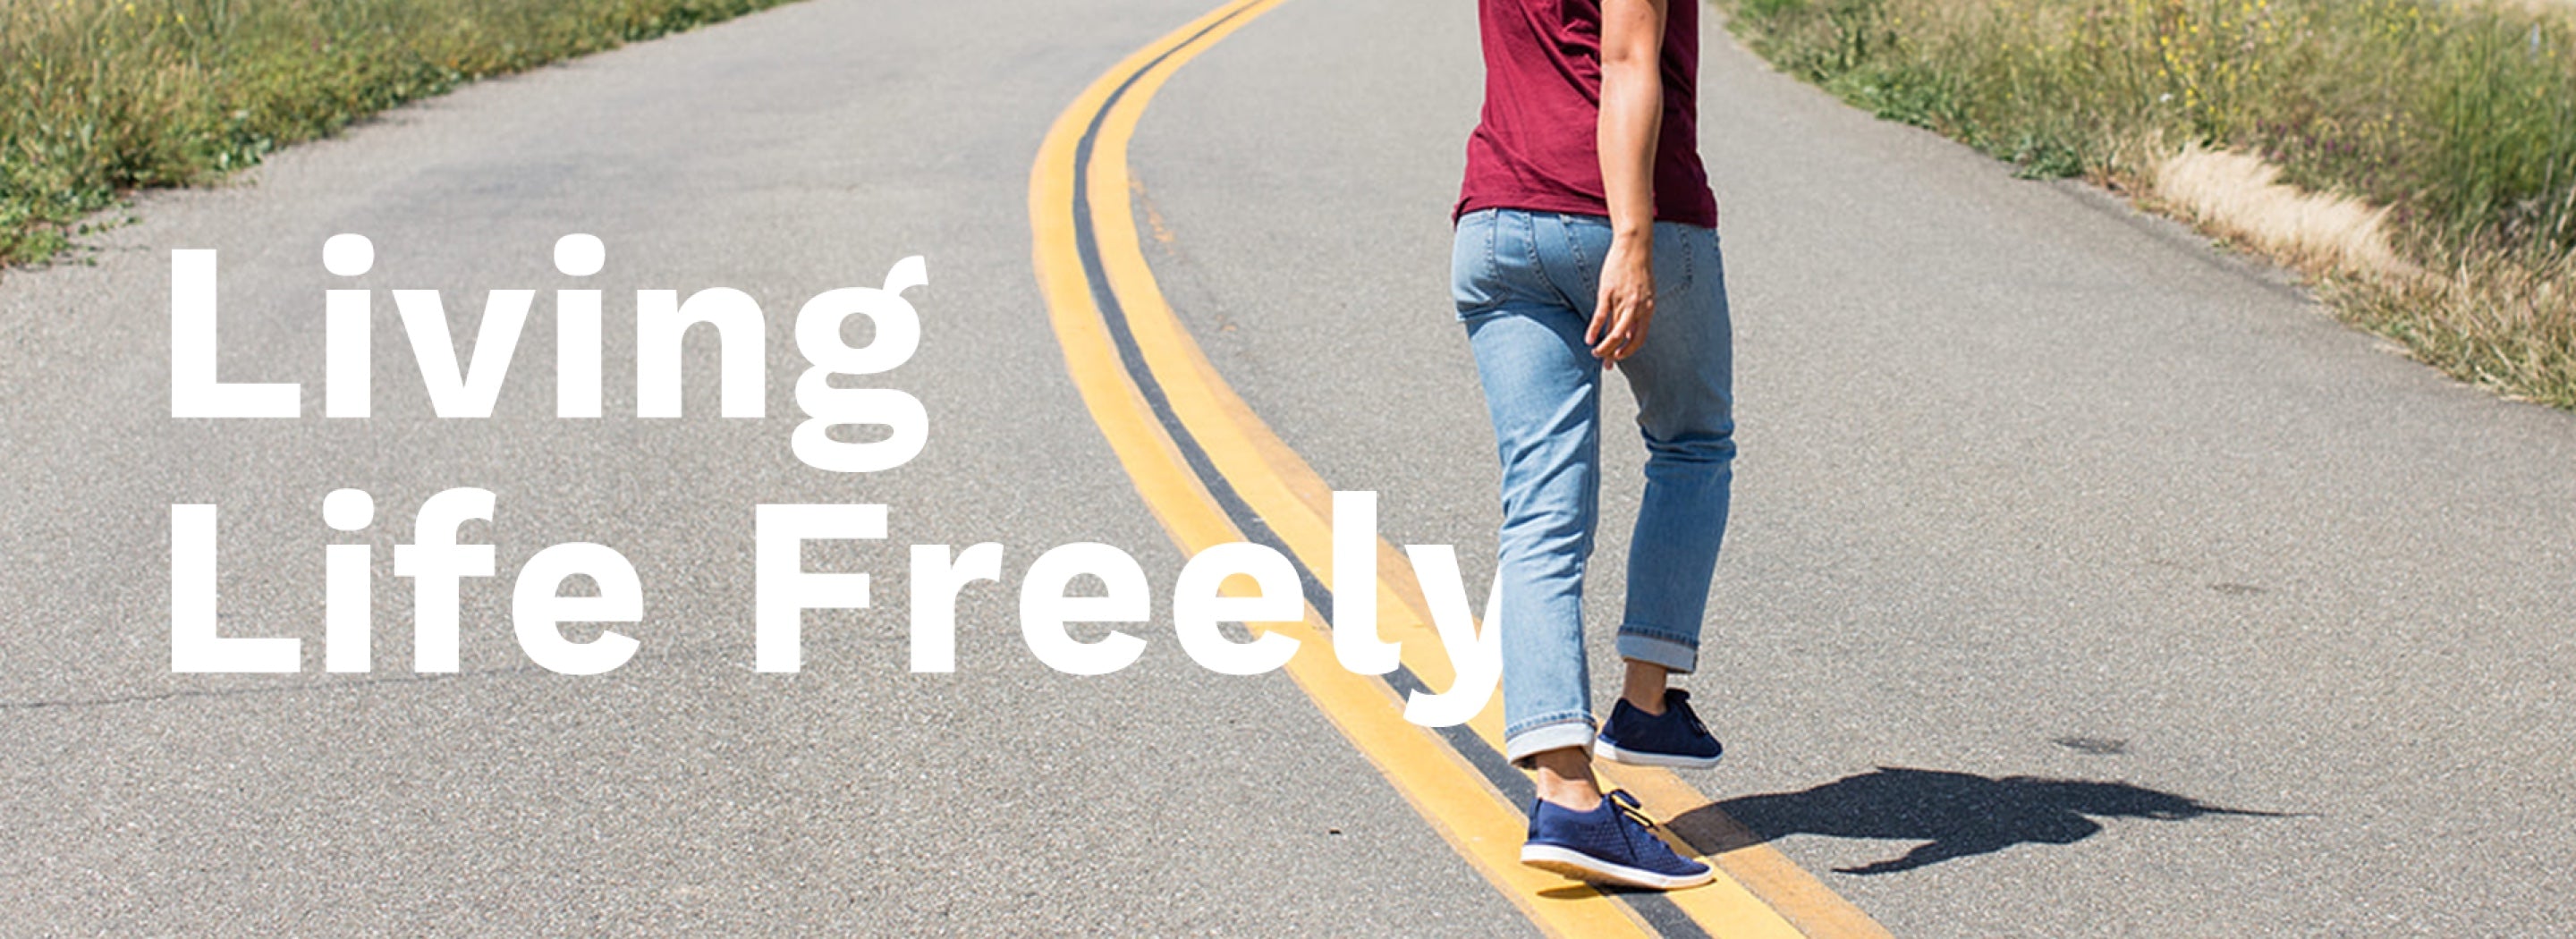 Living Life Freely.  Woman wearing Zilker sneakers walking freely down a road.